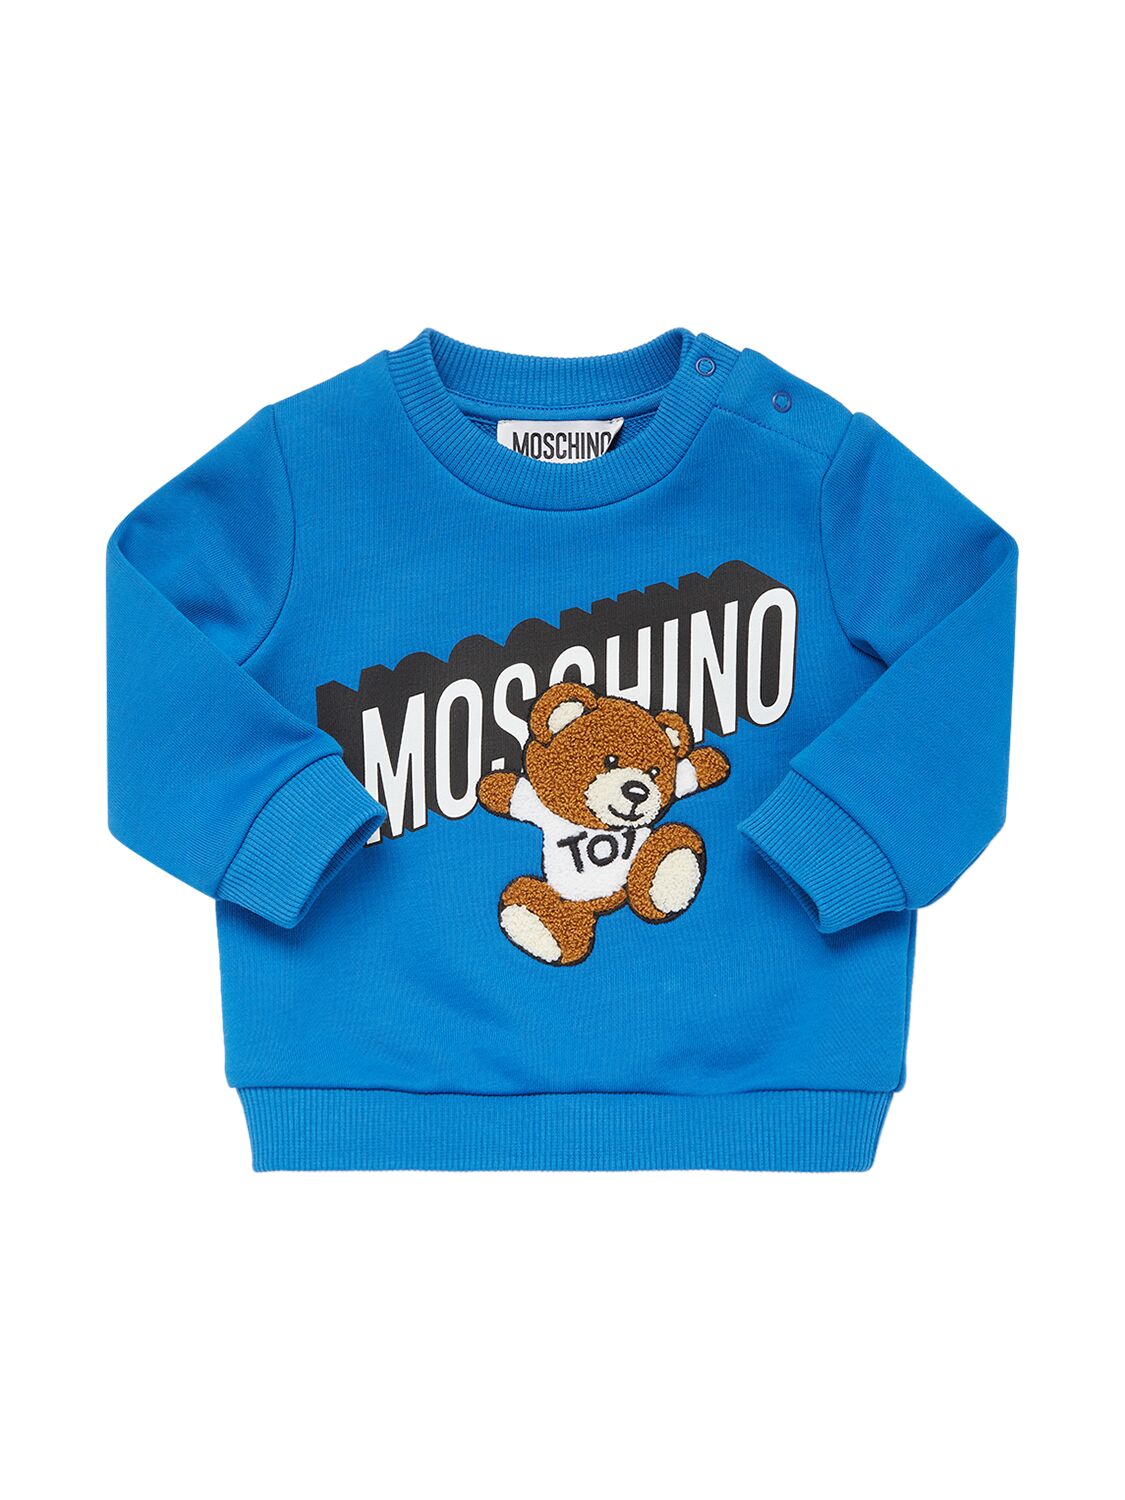 Moschino Kids' Cotton Crewneck Sweatshirt In Blue